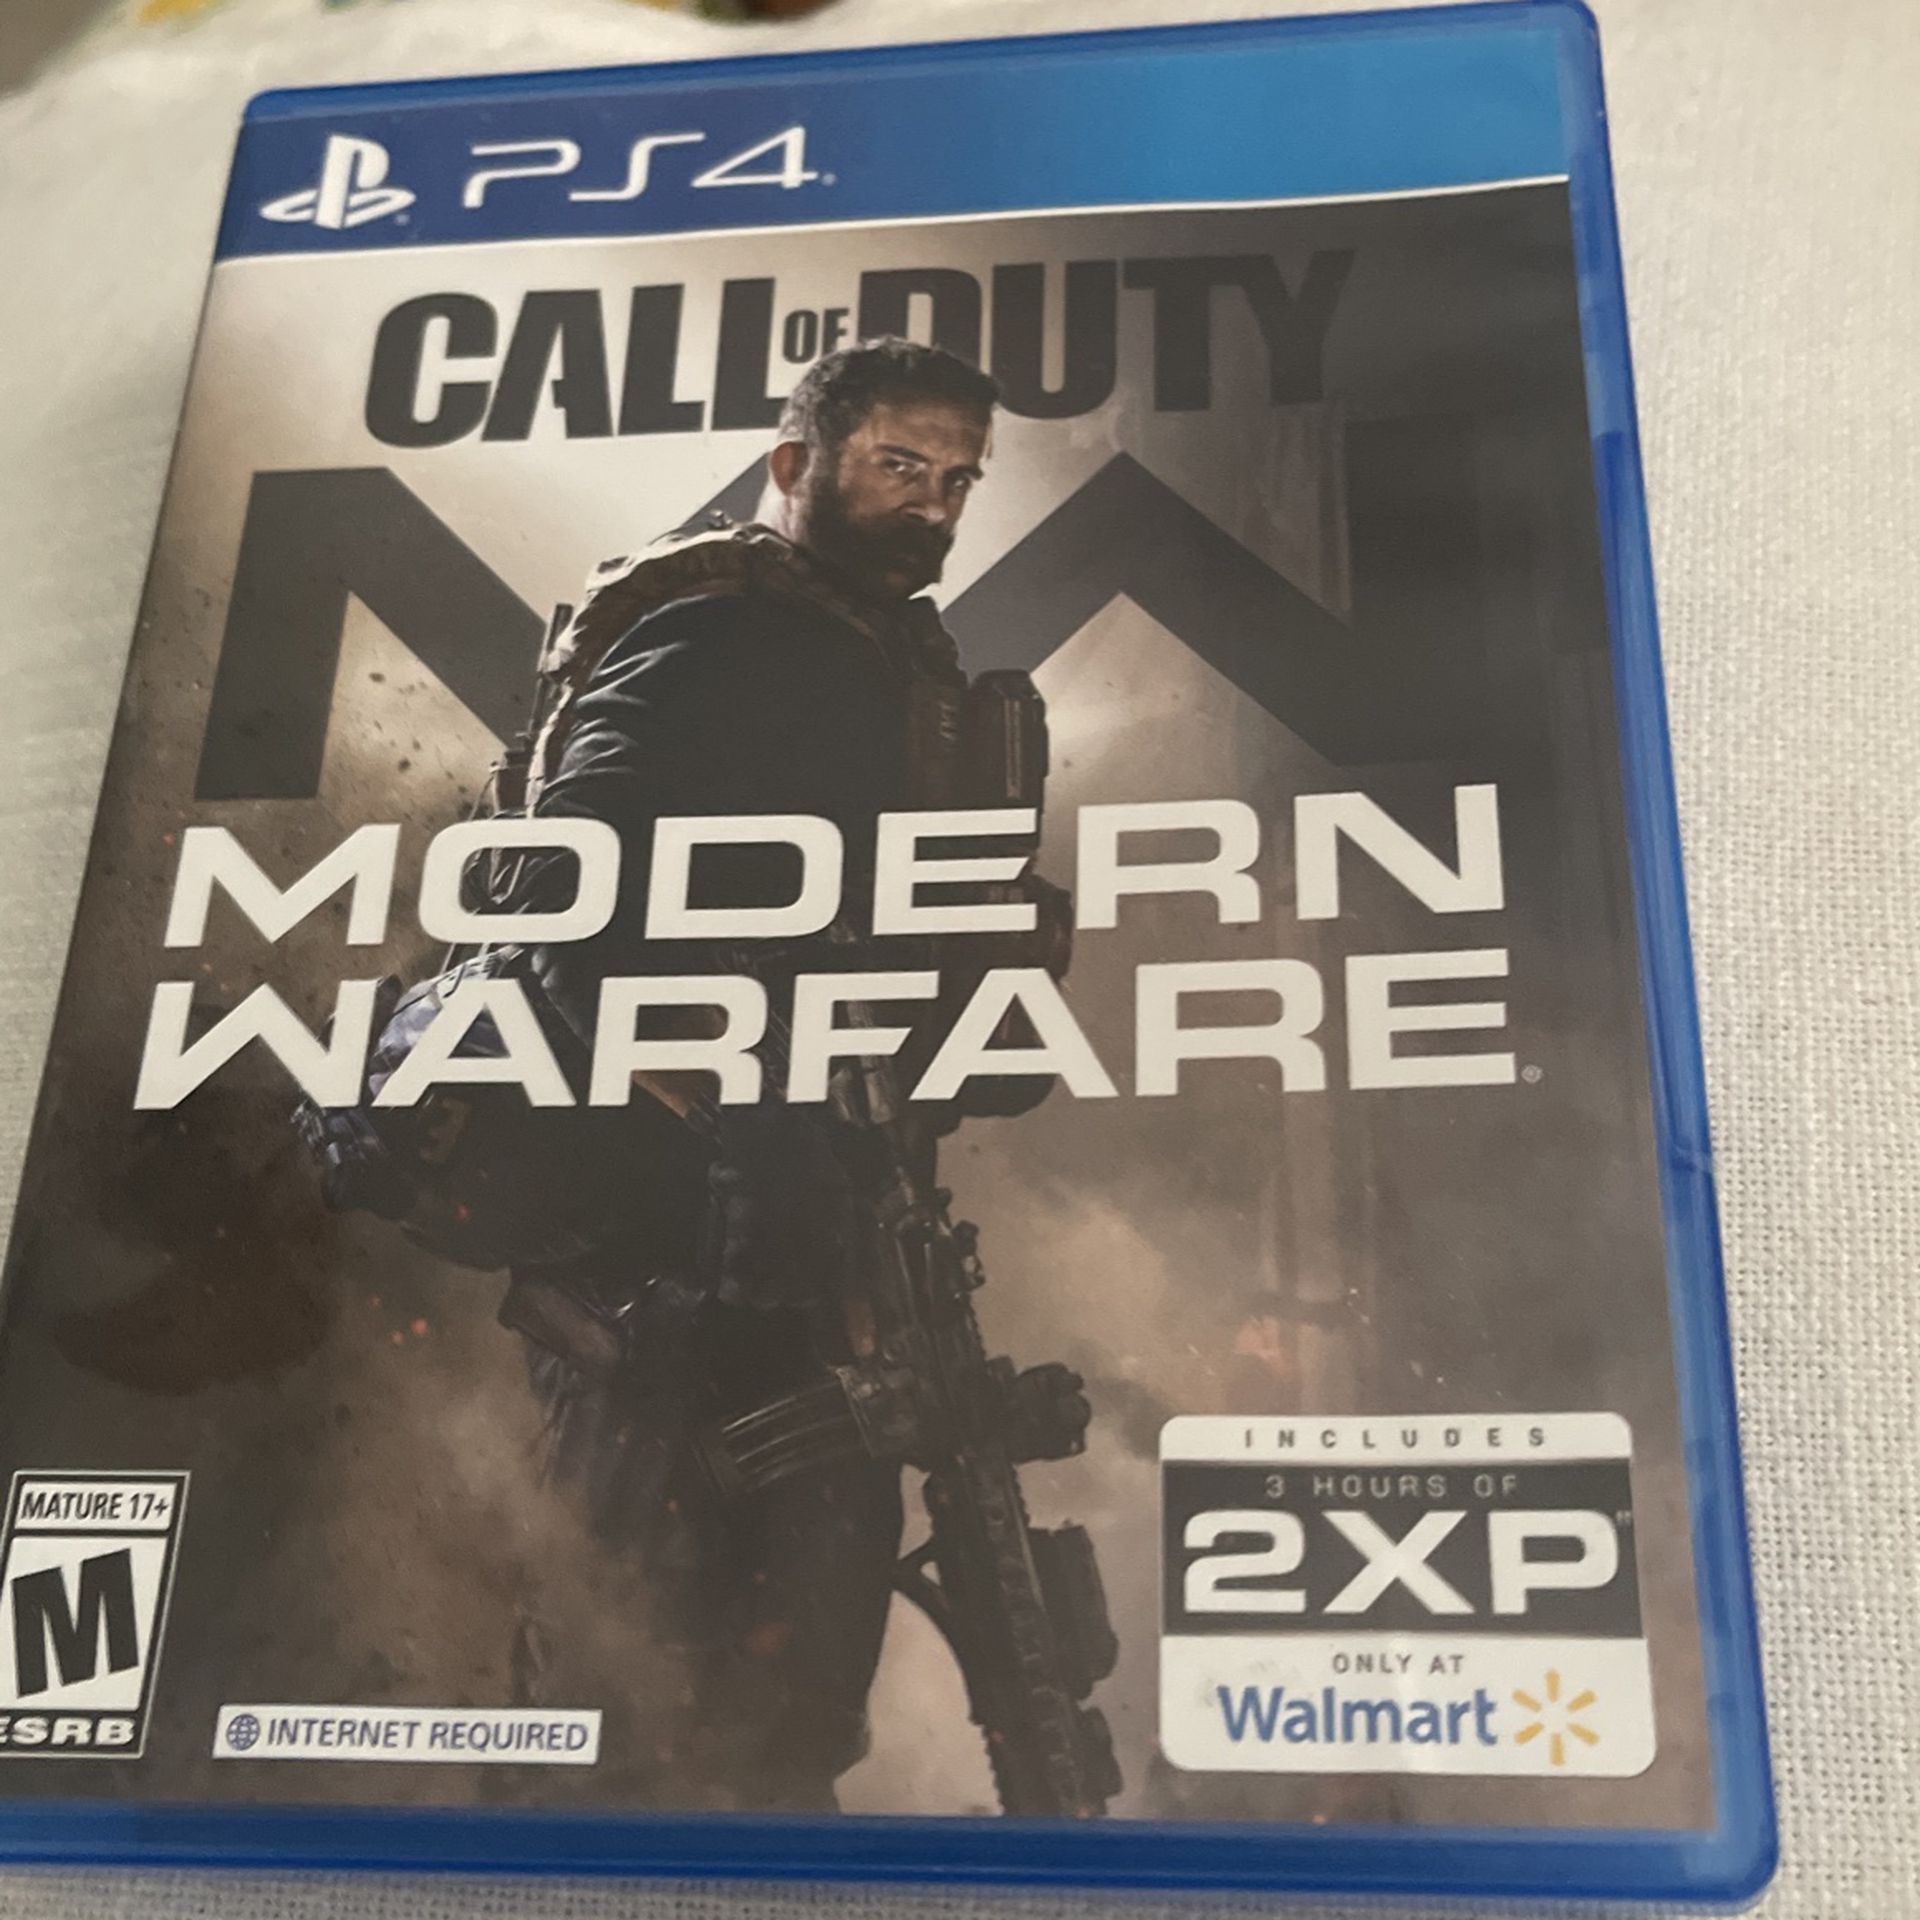 PS4 Call Of Duty Modern Warfare 